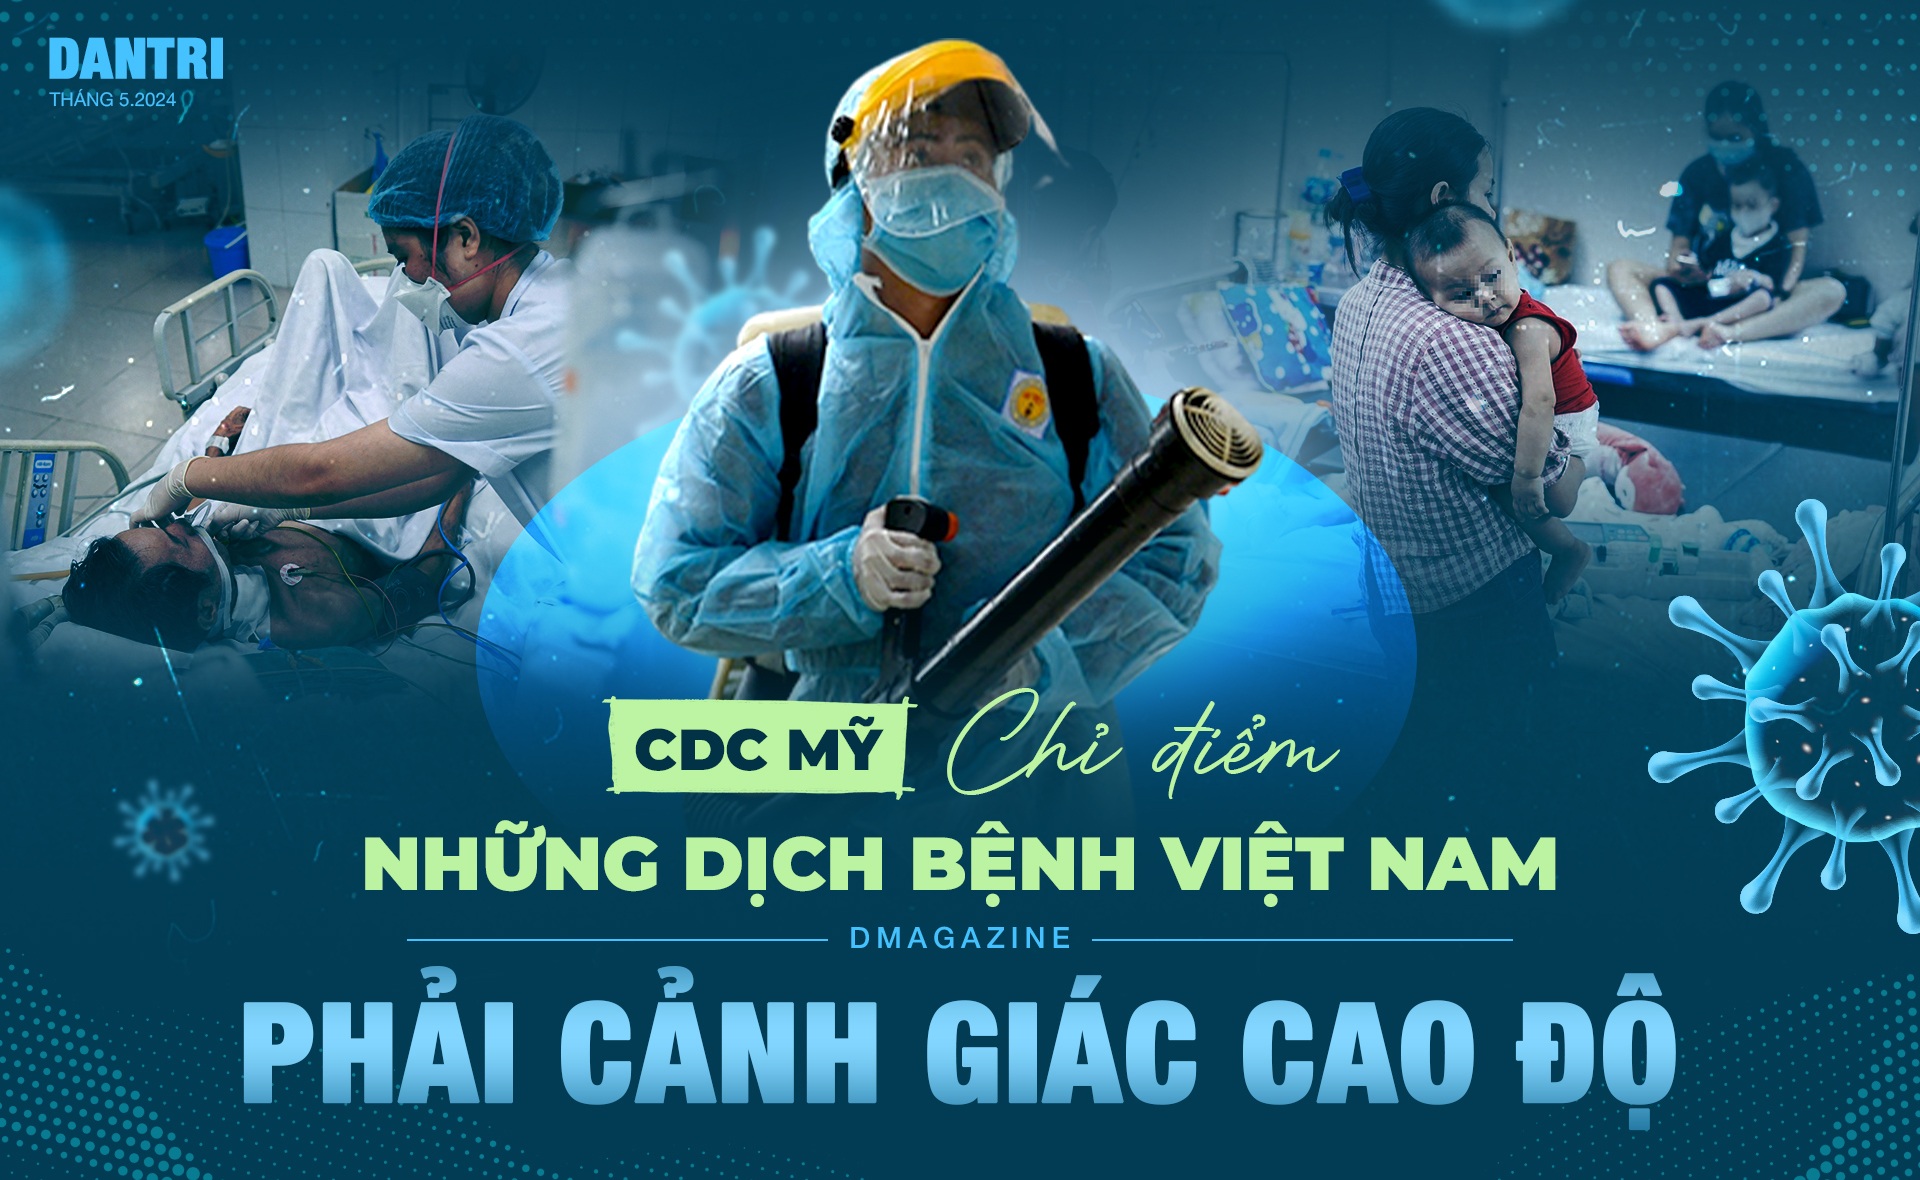 CDC Mỹ chỉ điểm những dịch bệnh Việt Nam phải cảnh giác cao độ